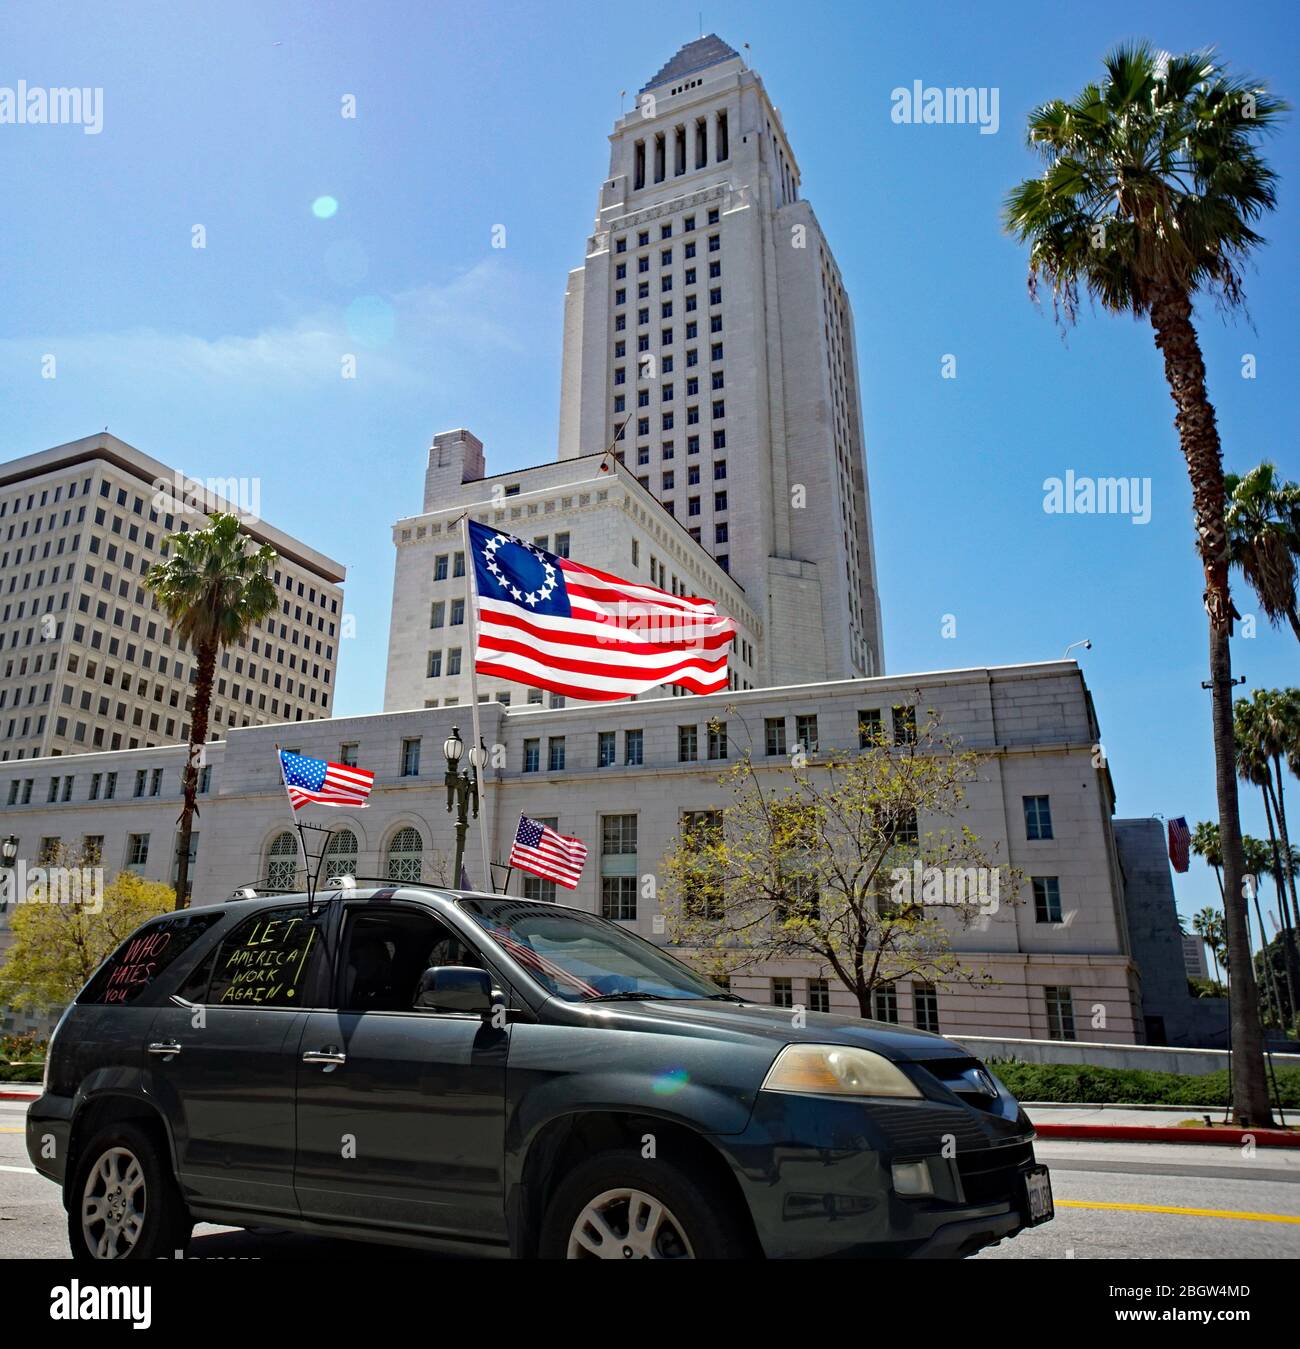 22 avril 2020 Los Angeles Californie, les manifestants devant l'hôtel de ville exigent que le gouverneur Newsom ouvre LA, mettre fin à la quarantaine. Banque D'Images